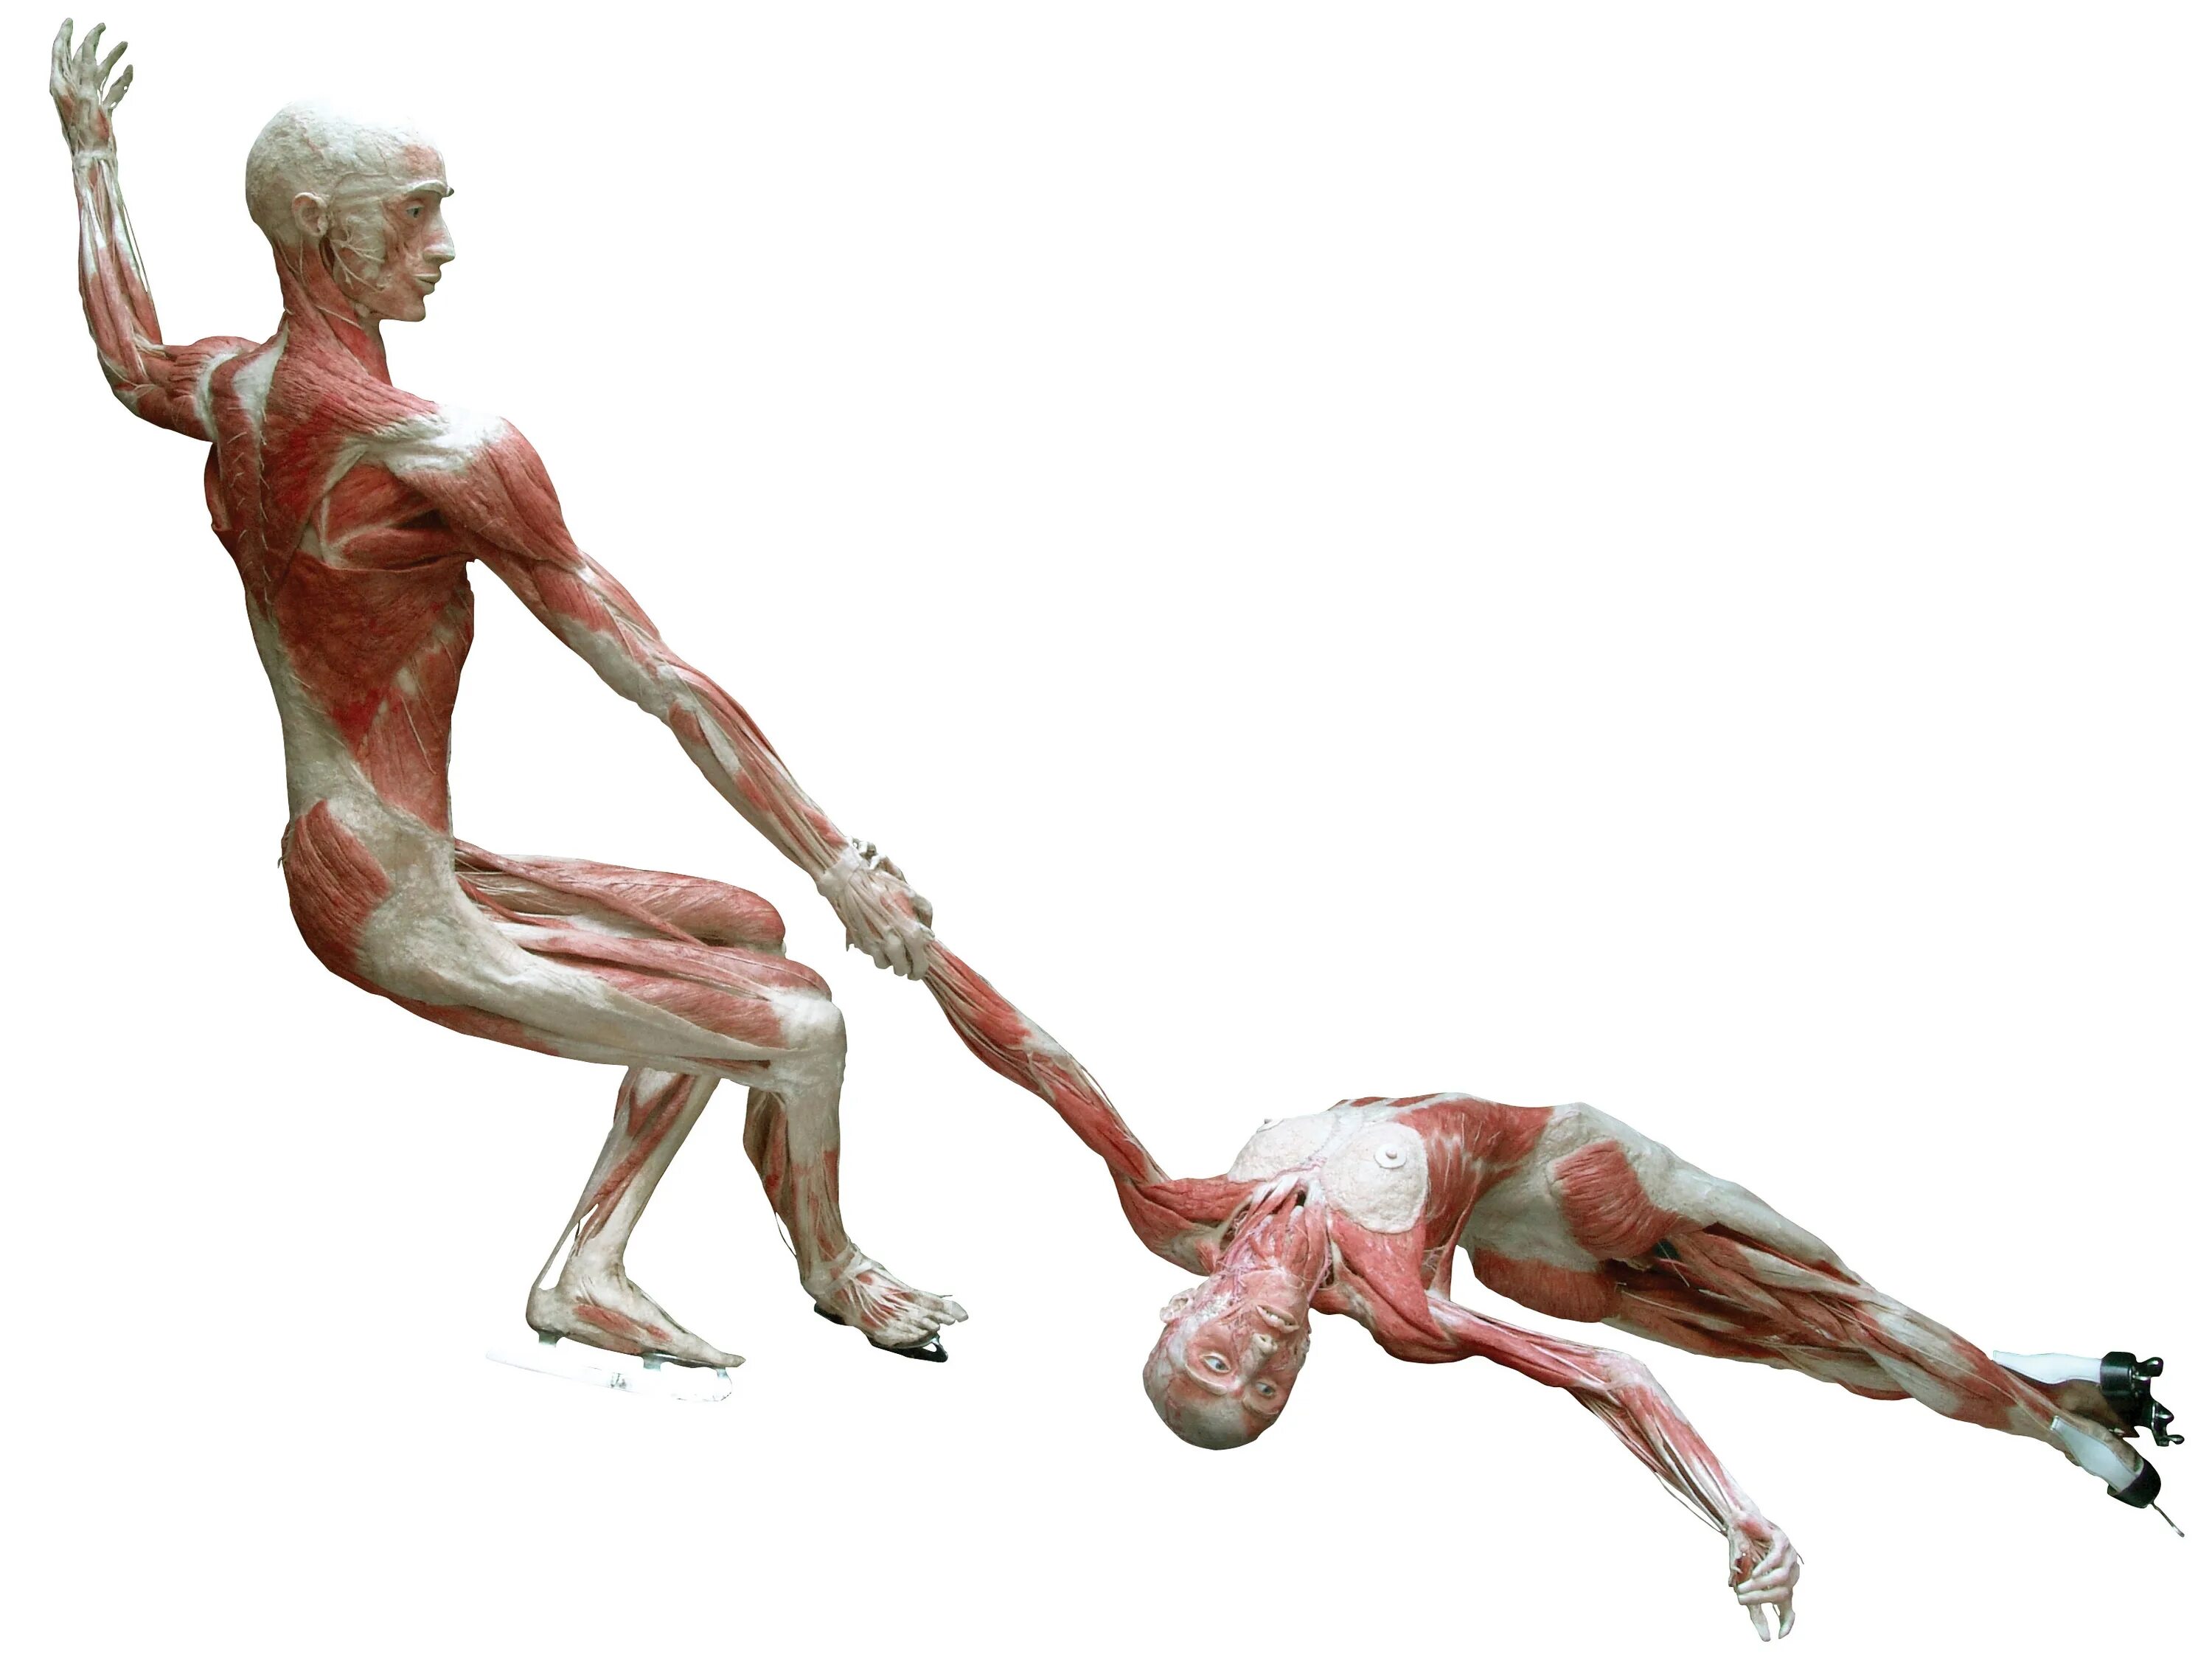 Сохранение человеческого в человеке. Гюнтер Хагенс анатомия. Анатомический театр доктора Гюнтера фон Хагенса. Музей пластинации Гюнтера фон Хагенса.